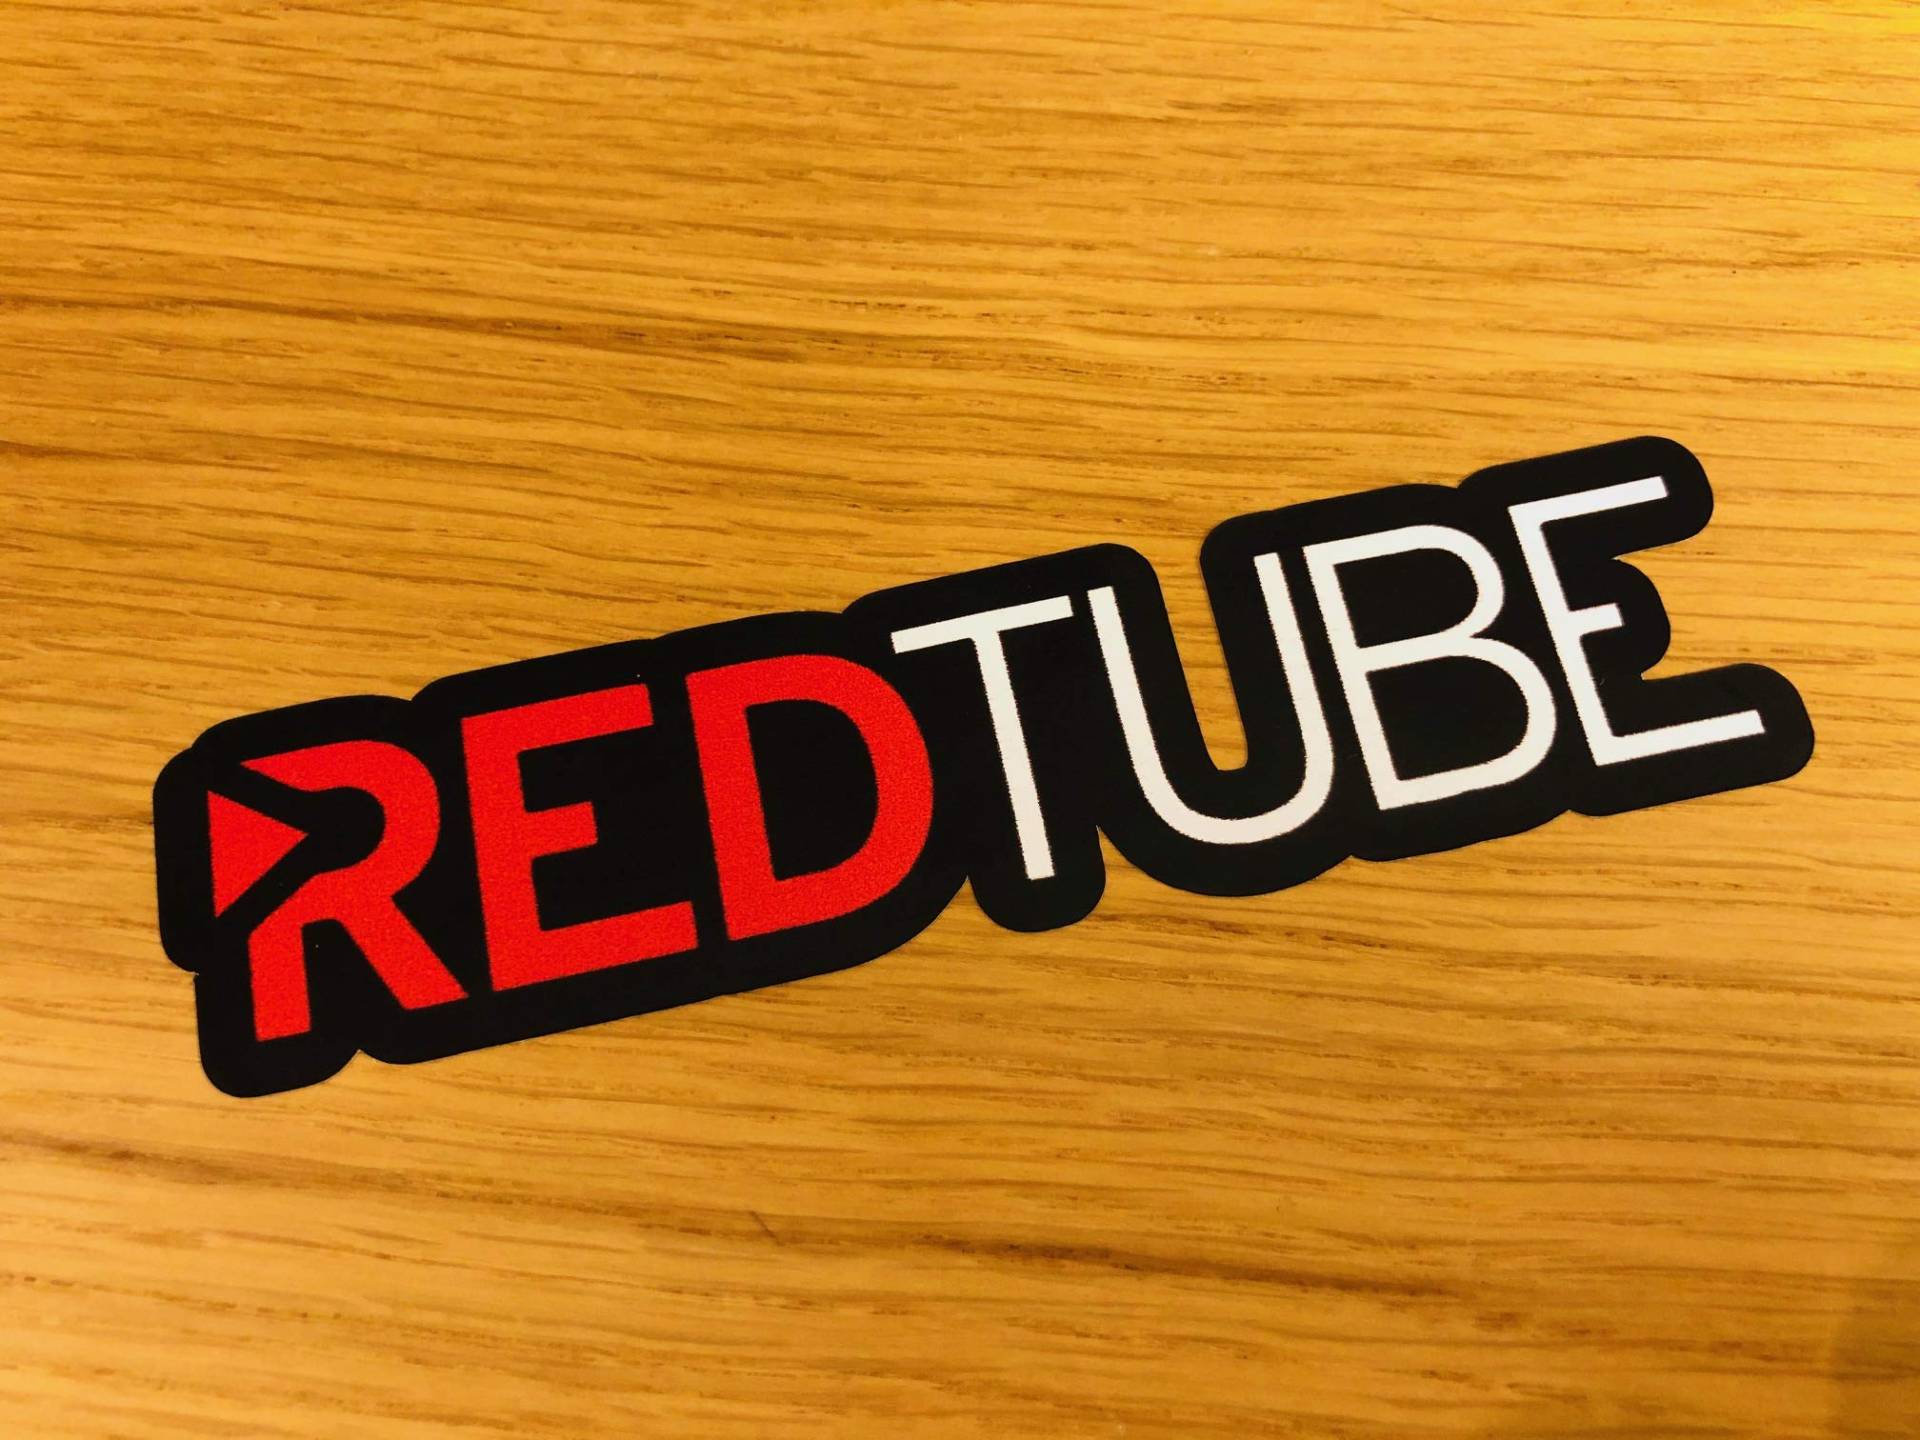 REDTUBE Aufkleber Sticker YouPorn Streaming Tube Sex Fun Spaß Sprüche Kult Insta Mi373 von Stickerverticker